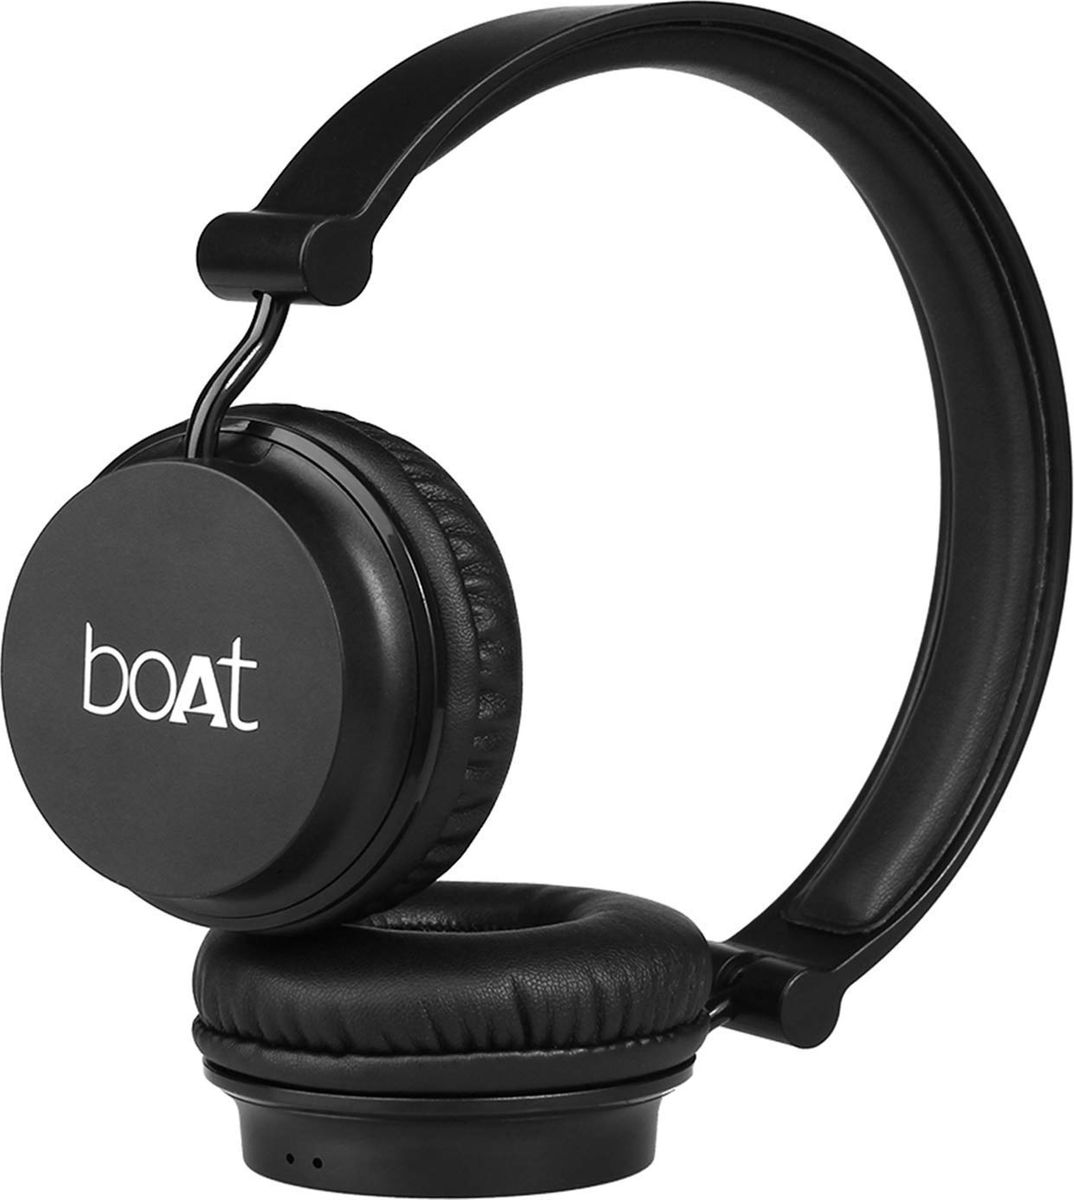 Boat Rockerz 410 Bluetooth Headphones Best Price In India 21 Specs Review Smartprix